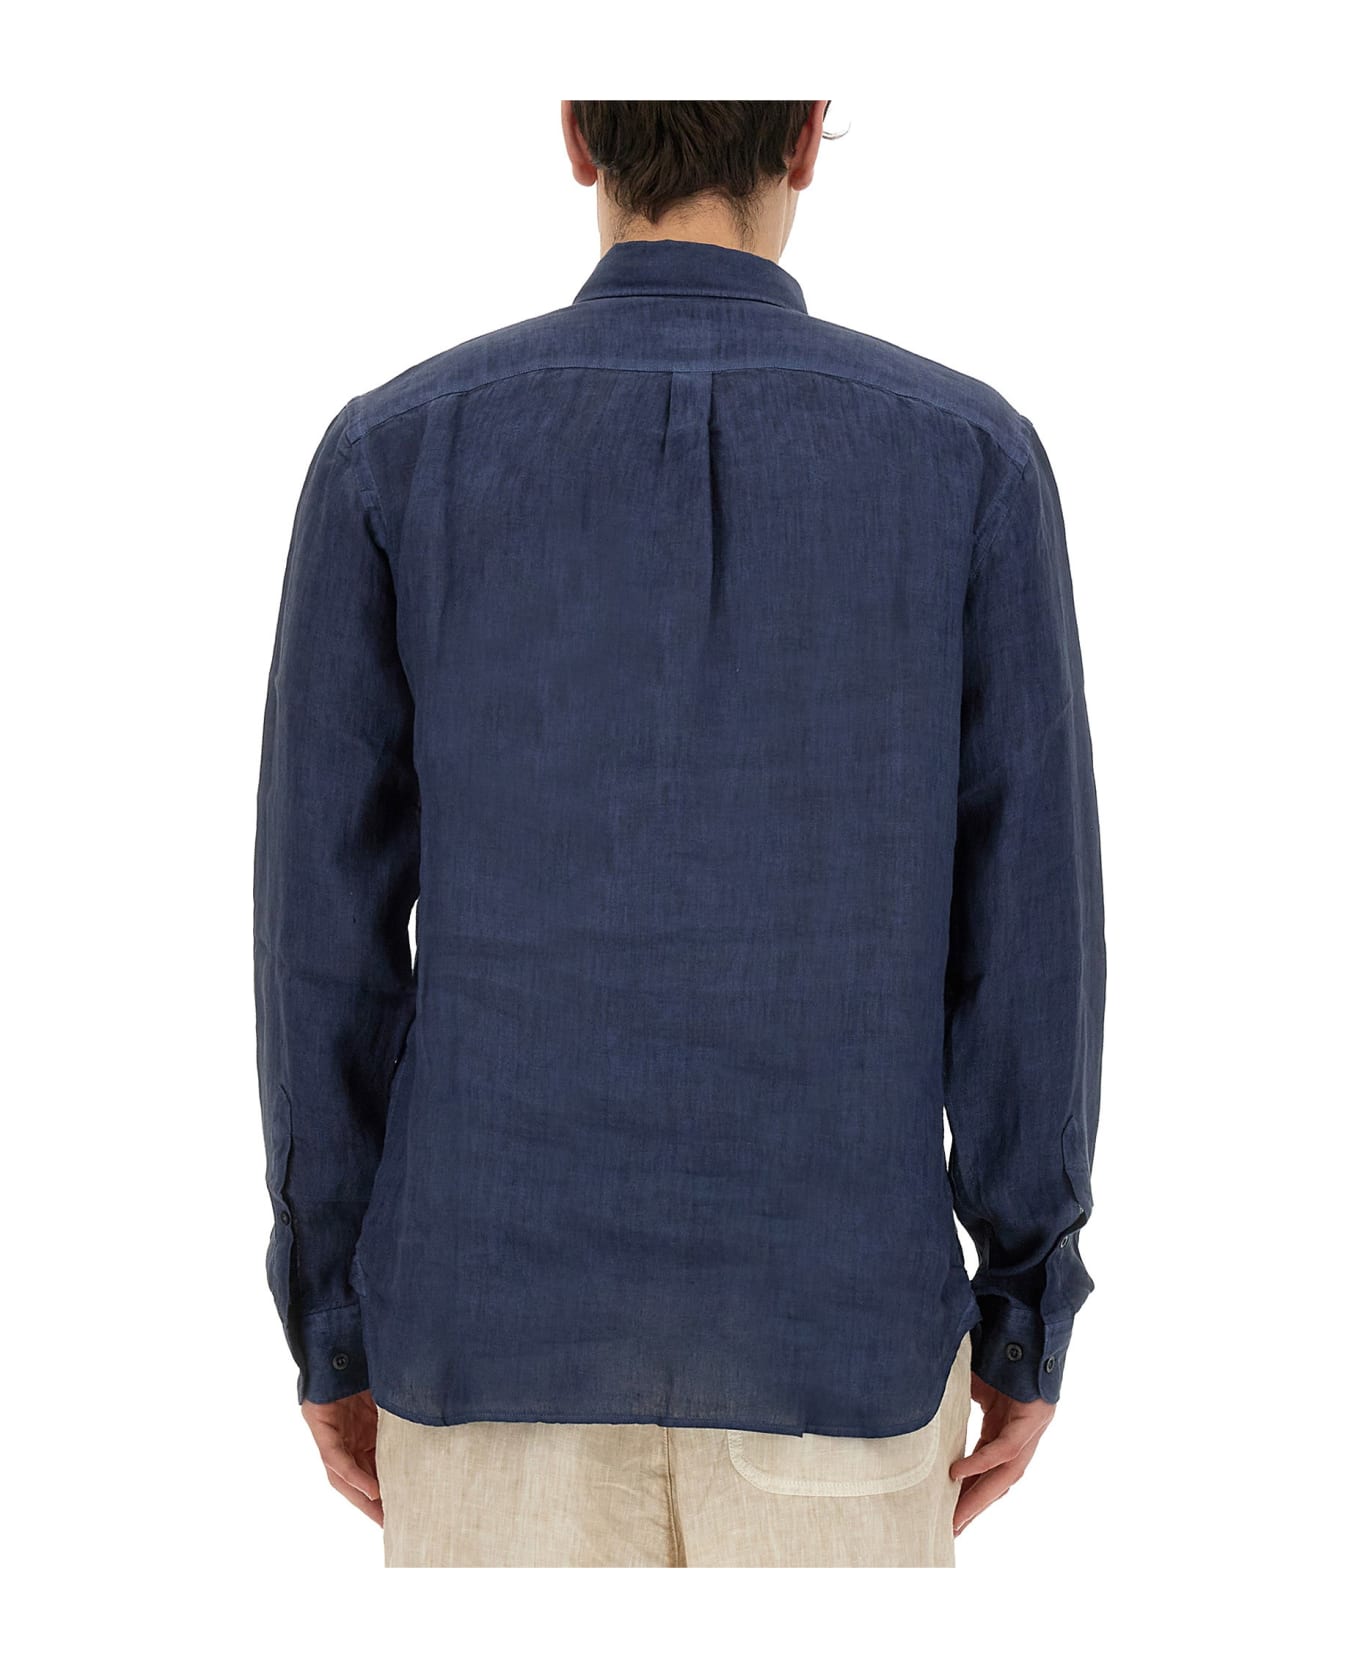 120% Lino Linen Shirt - Navy blue fade